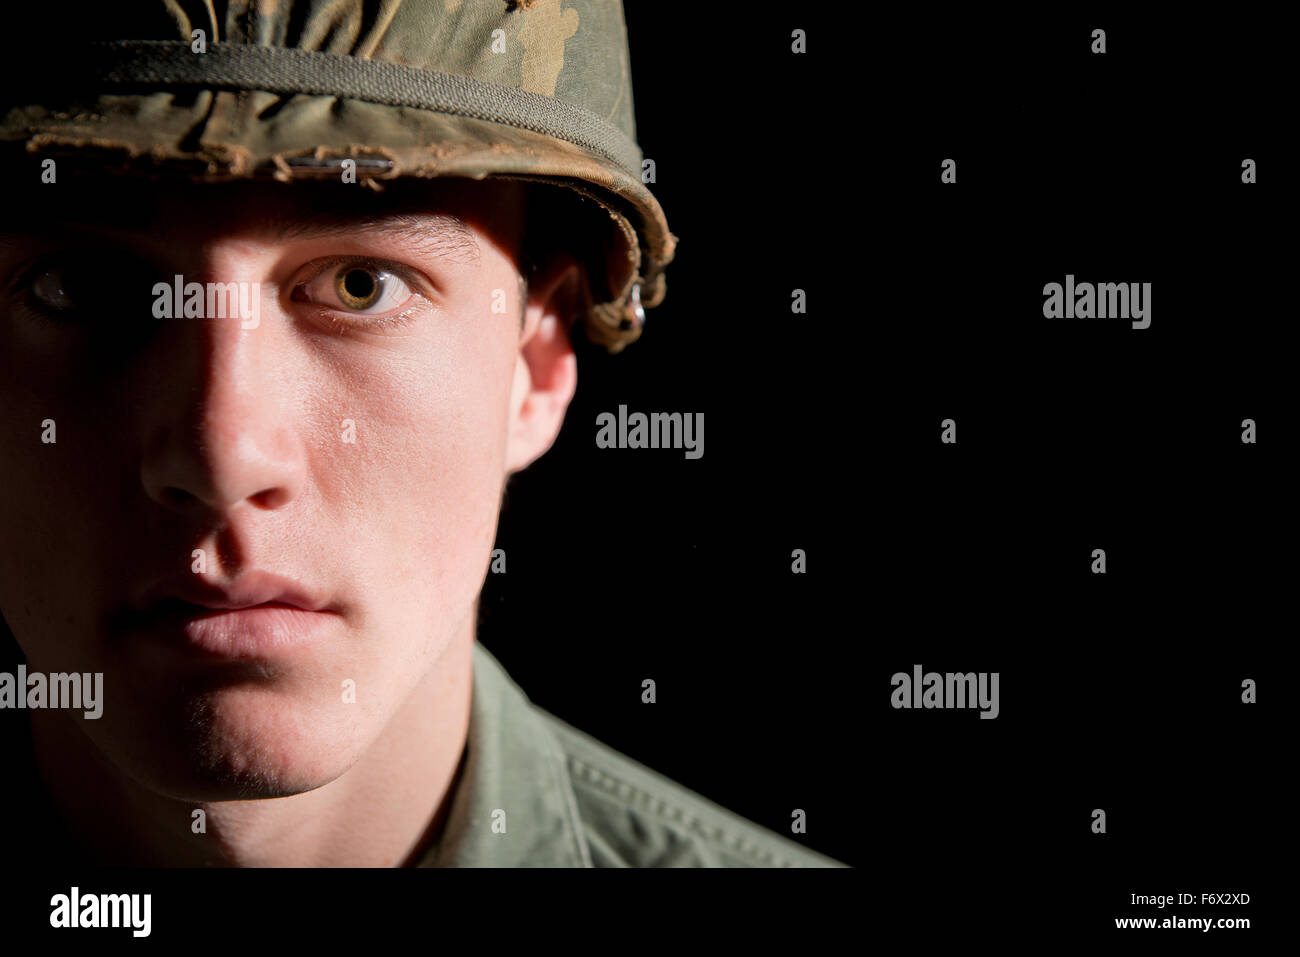 Amerikanischen GI Soldat aus dem Vietnam-Krieg, mit Hälfte seines Gesichts im tiefen Schatten. Stockfoto